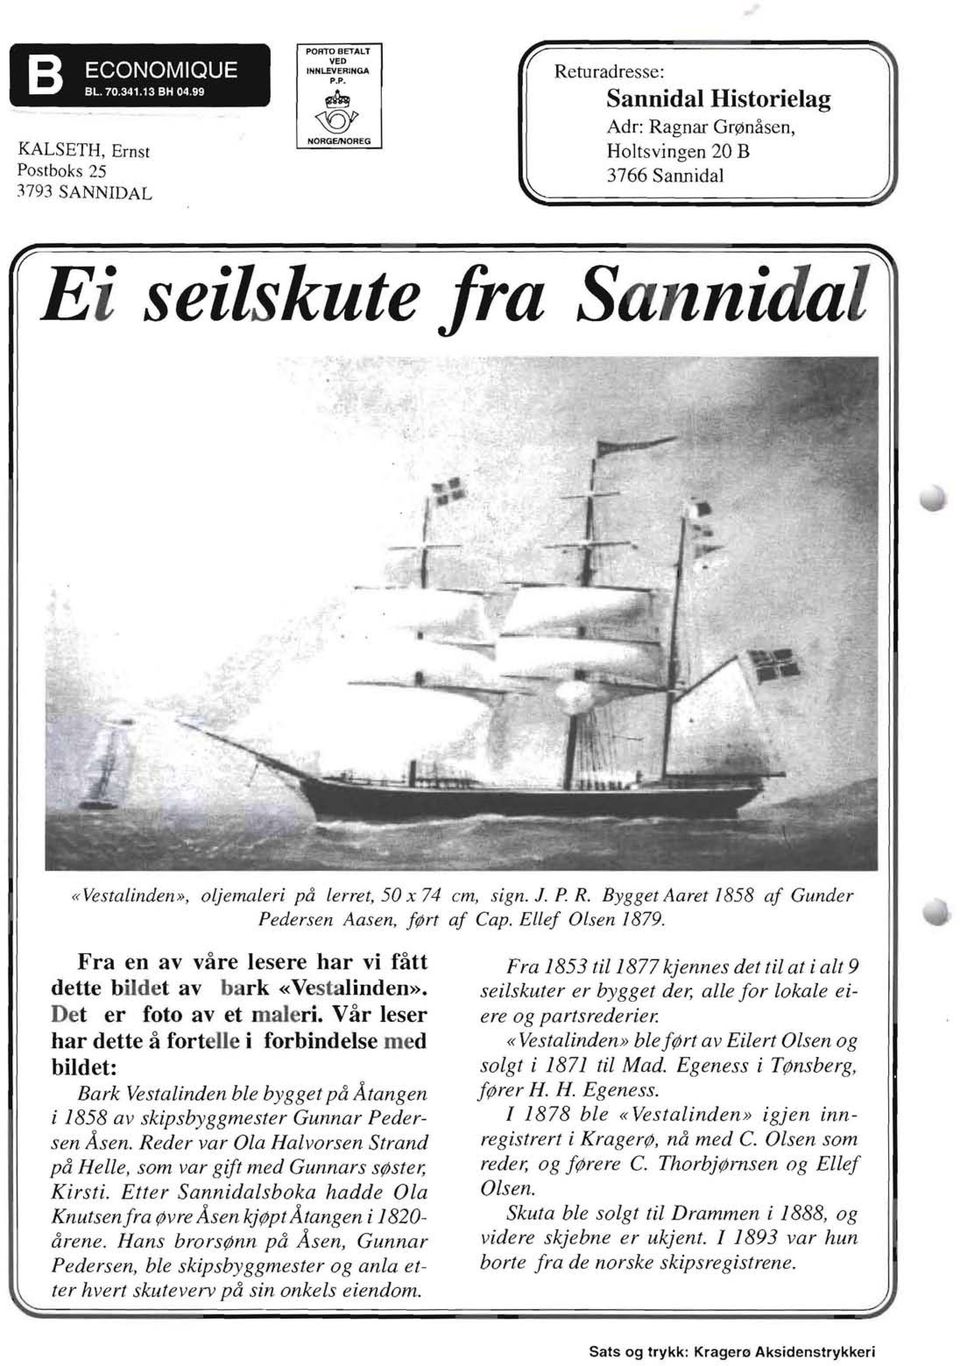 Var leser har deue a forteue i forbindelse med bildet: Bark Vestalinden ble bygget pa Atangen i 1858 av skipsbyggmester Gunnar Pedersen Asen.